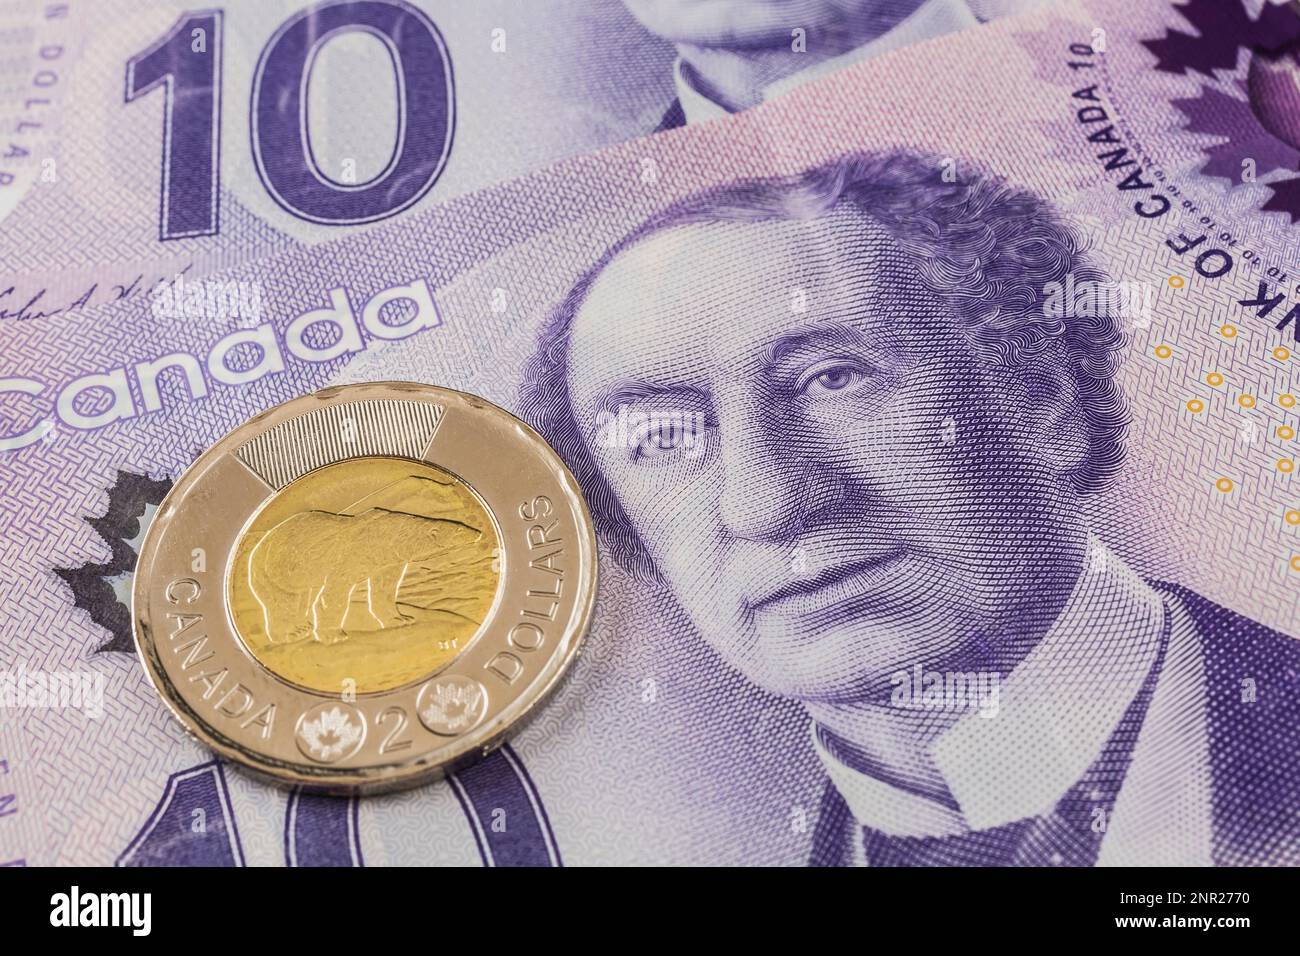 Pièce canadienne de deux dollars sur des billets de banque canadiens de dix dollars avec le portrait de sir John A. Macdonald. Banque D'Images